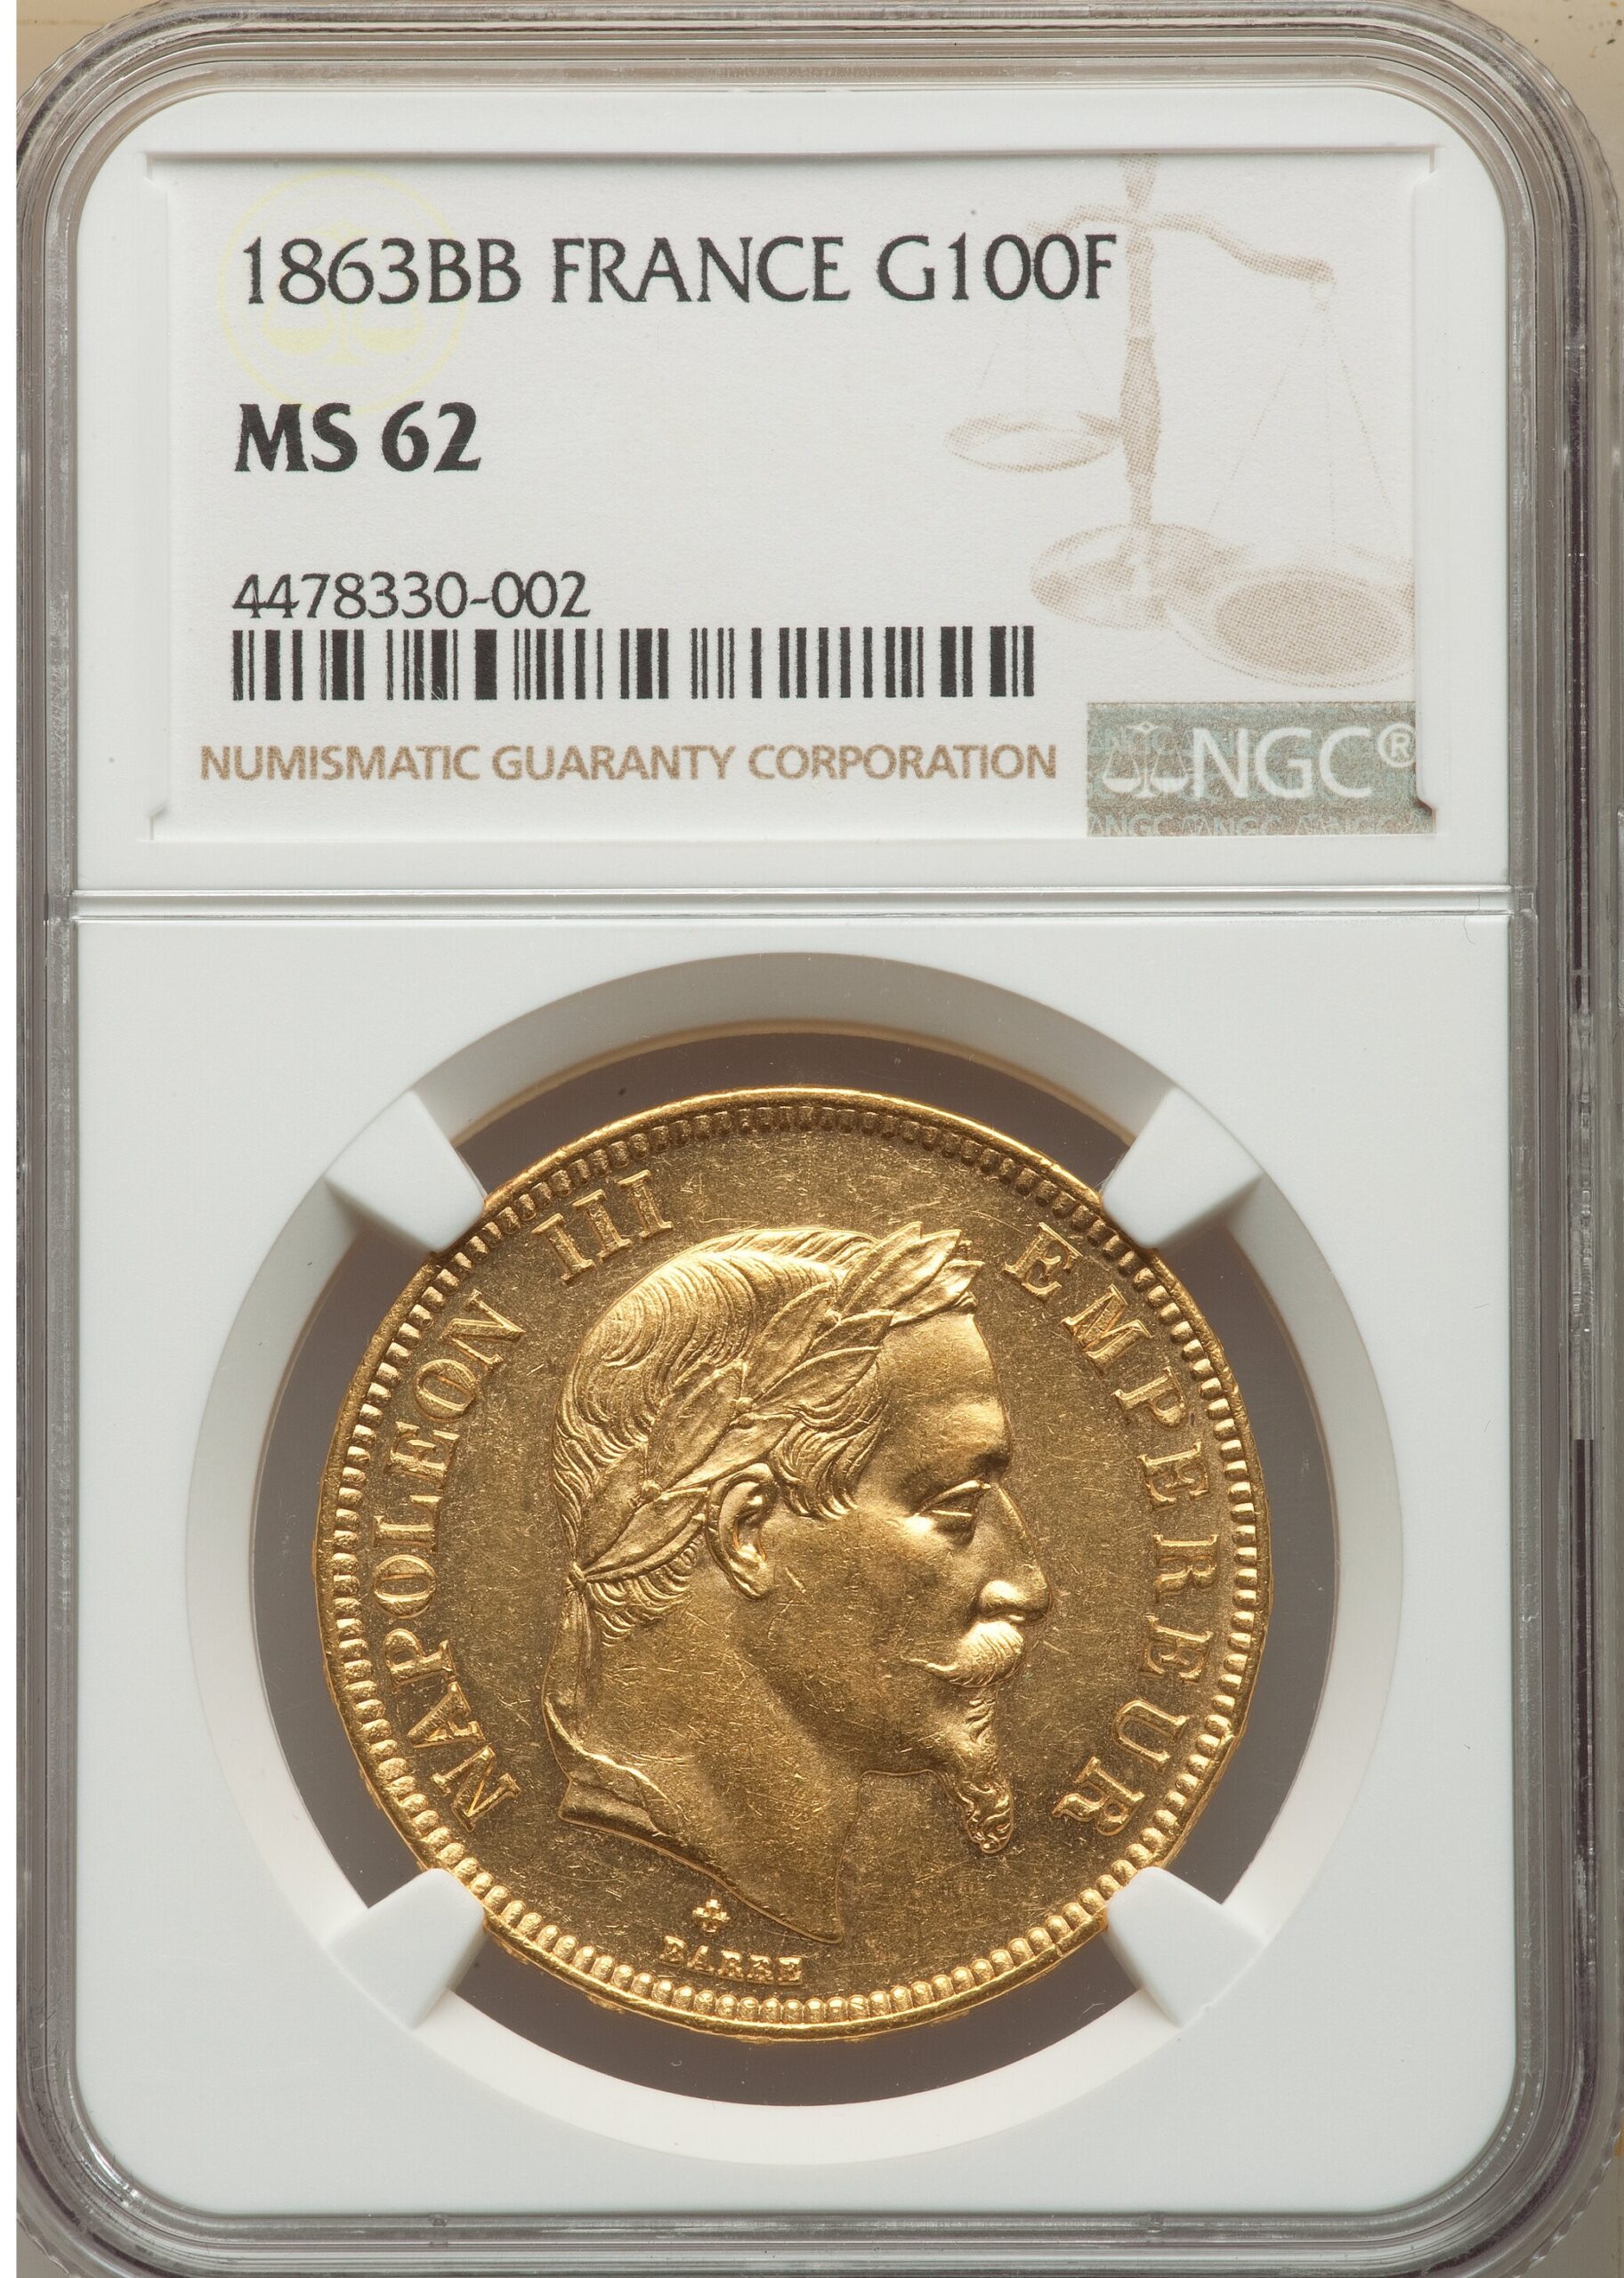 1863年BBナポレオン3世100フラン金貨【MS62】 | アンティークコイン 